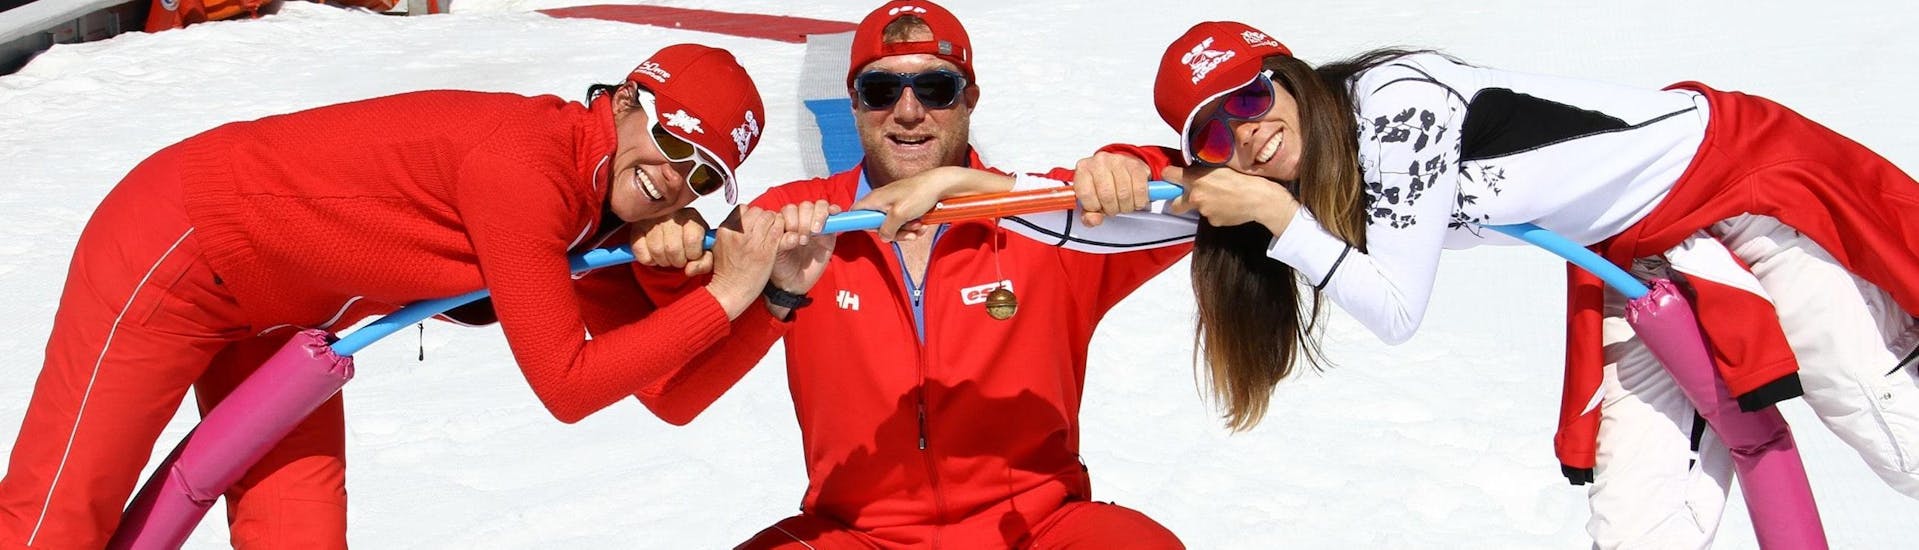 Les moniteurs de ski de l'école de ski ESF Aussois prennent une photo de groupe amusante avant un de leurs cours de ski.